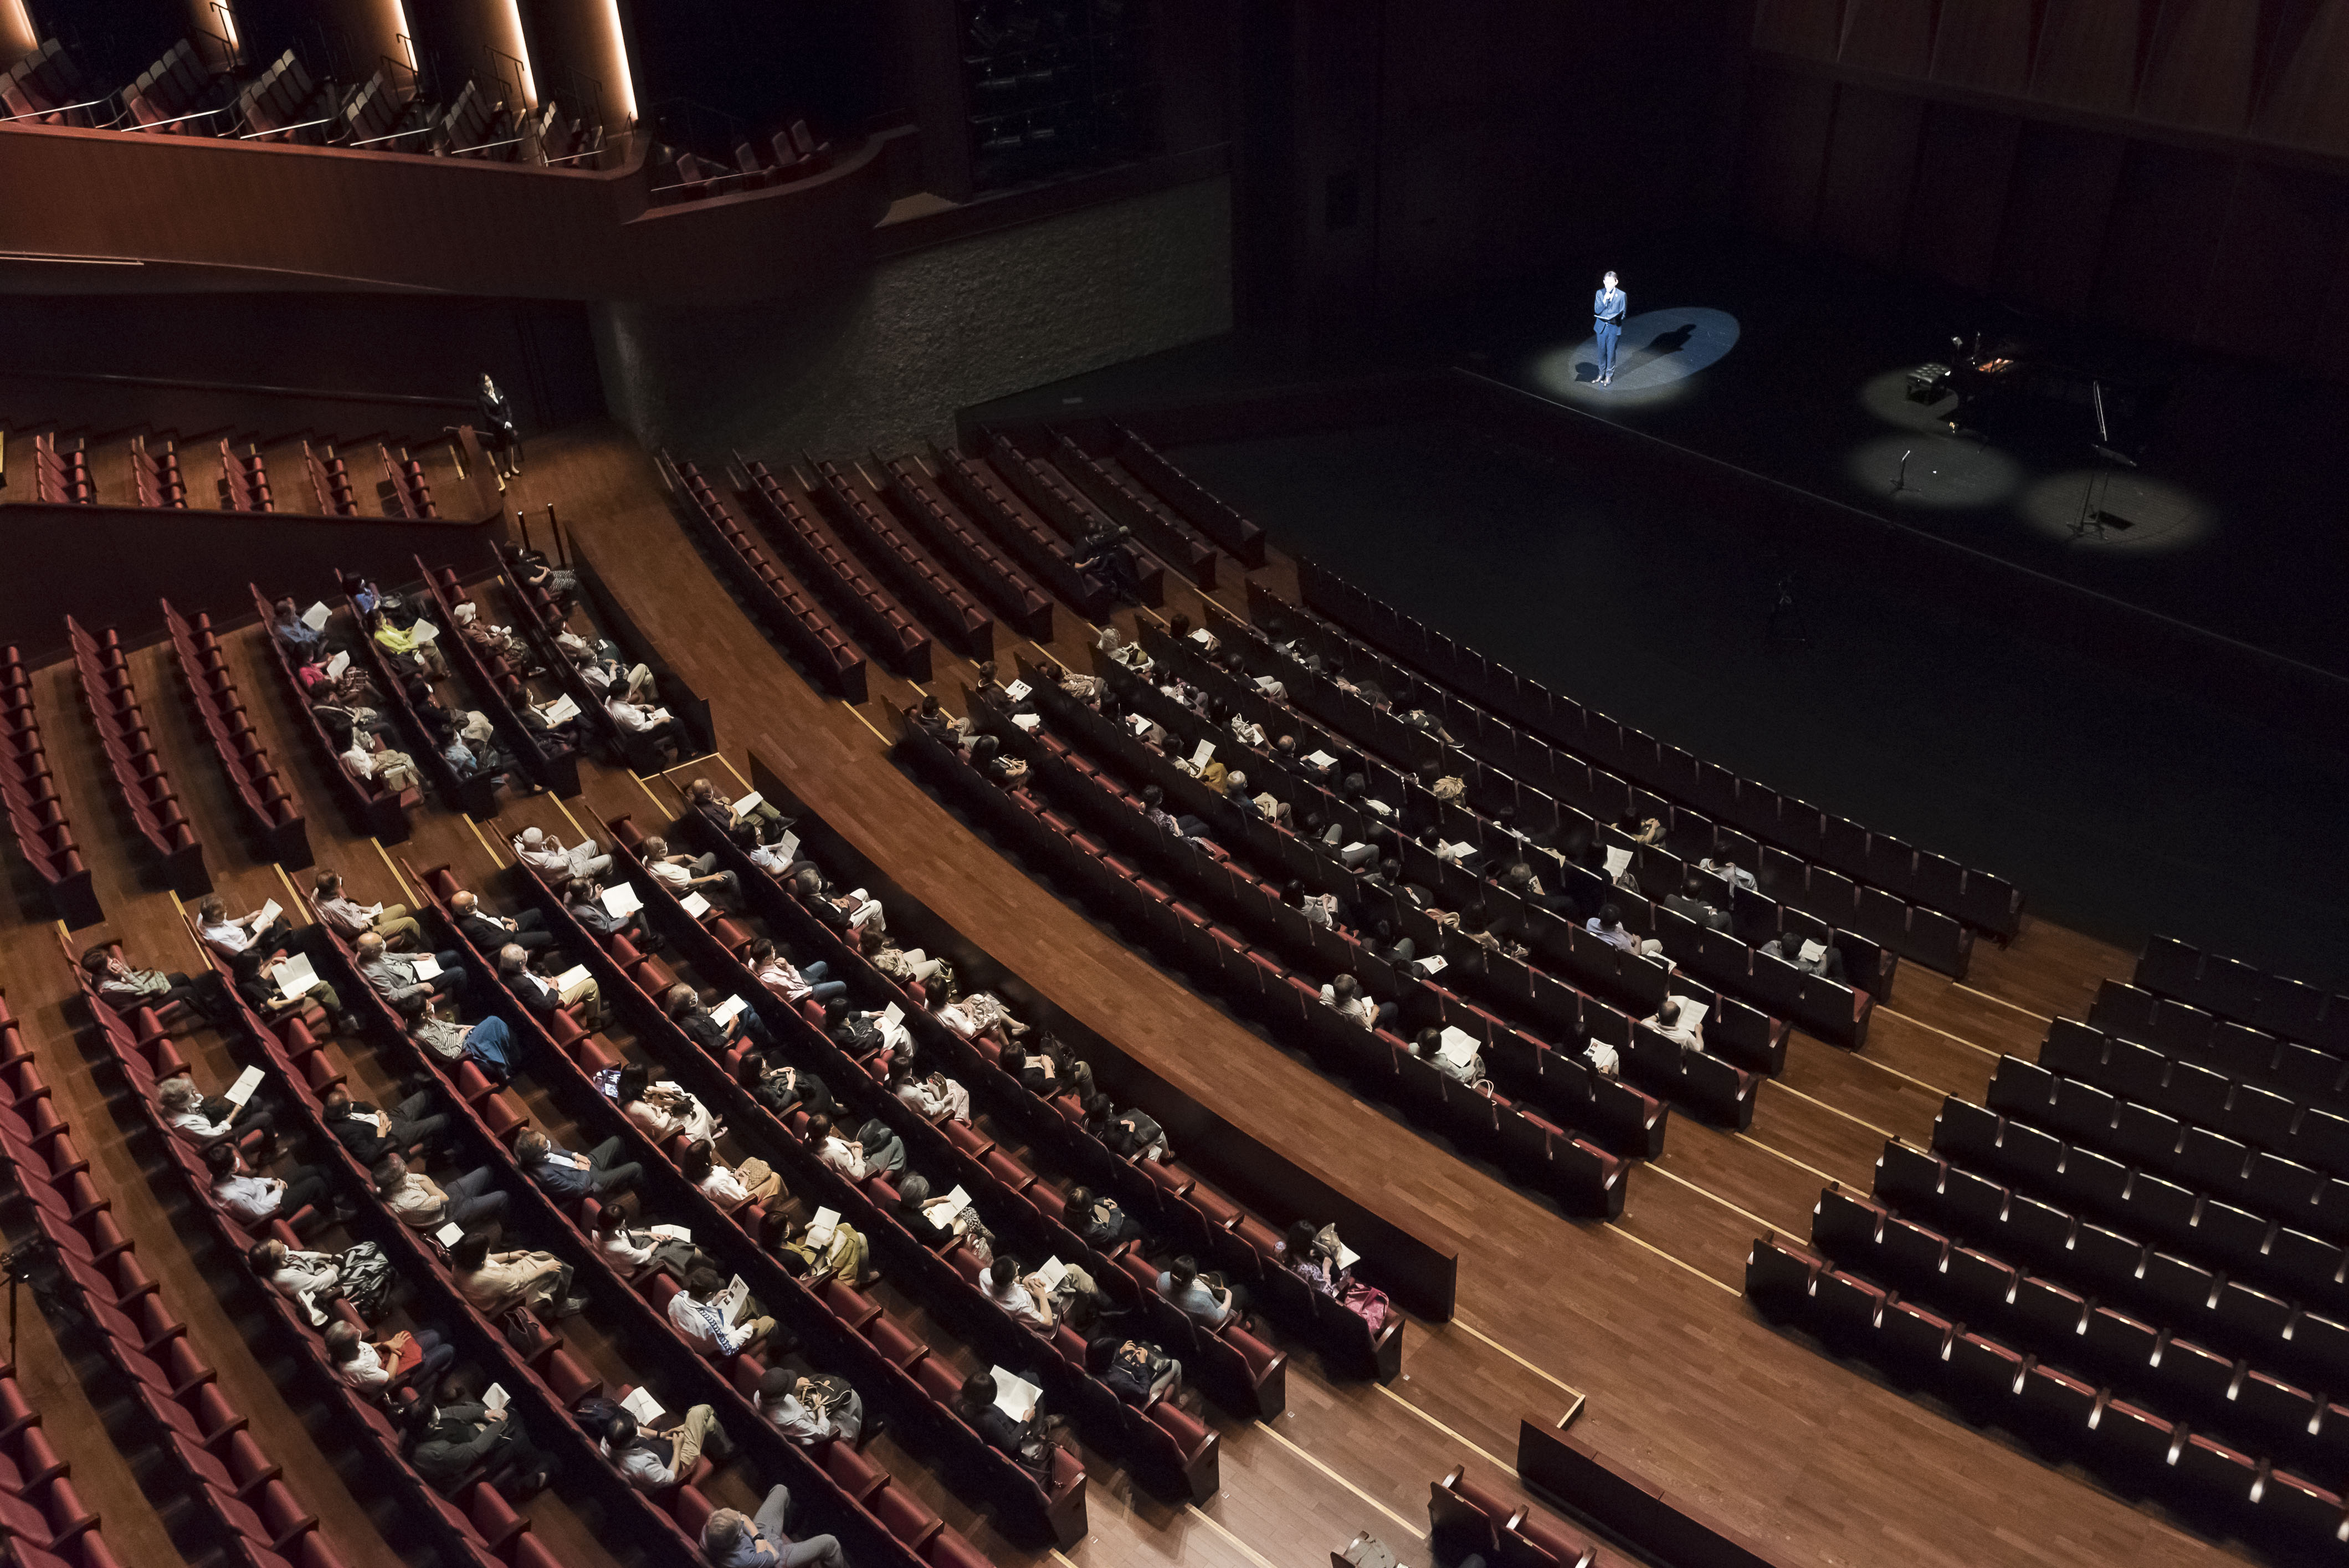 札幌文化芸術劇場 hitaru 公演再開に向けたテストコンサート「ともそう TOMORROW」を実施しましたイメージ3枚目